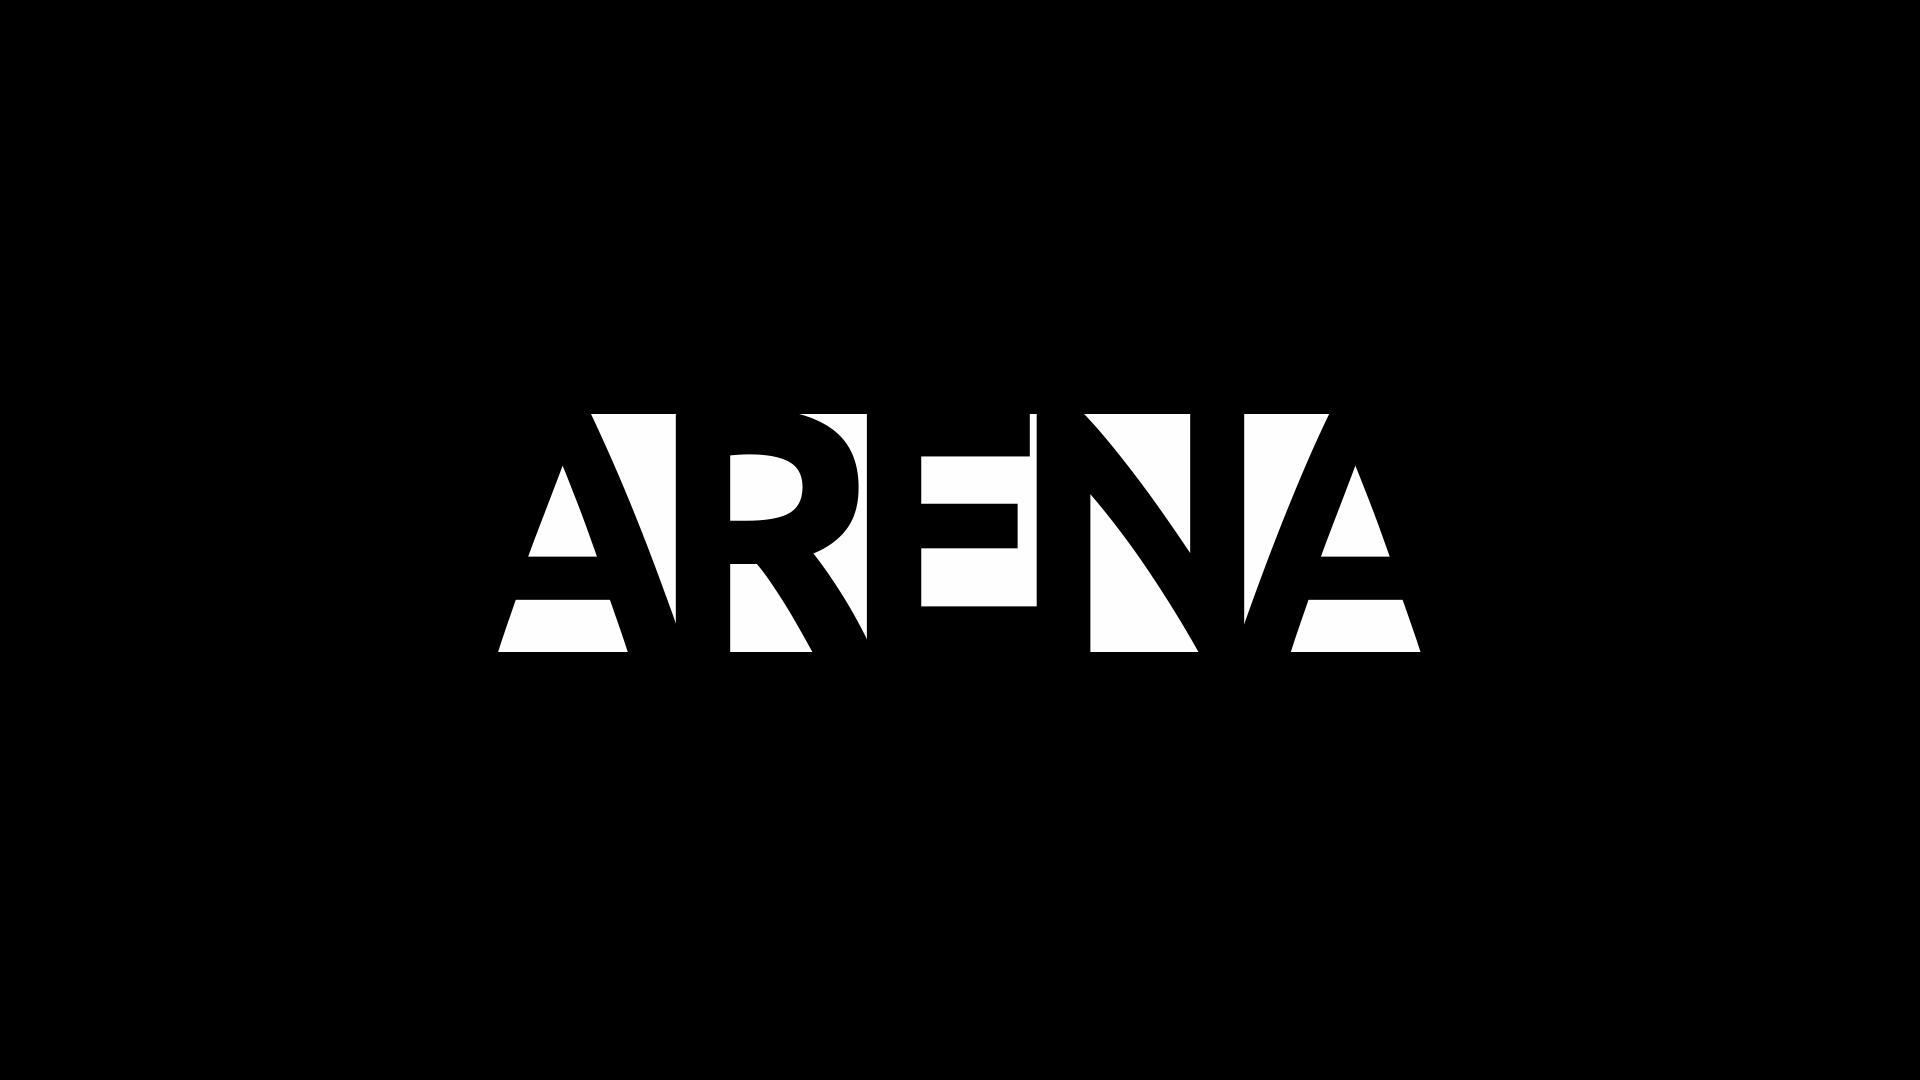 Arena_block_invert.png